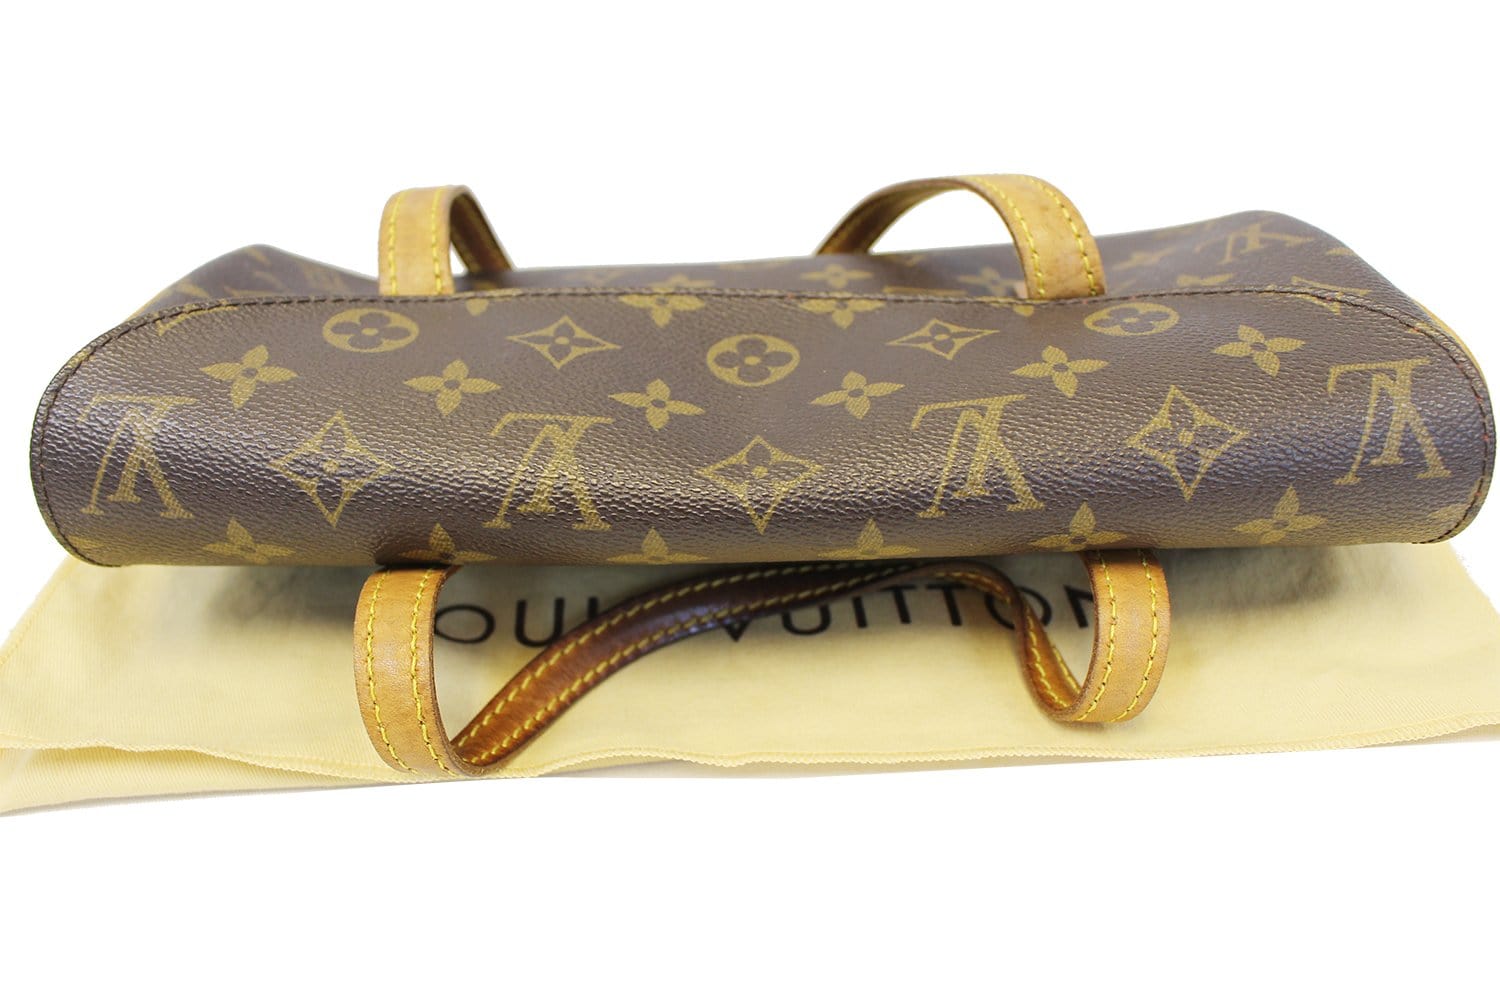 Shop for Louis Vuitton Monogram Canvas Leather Sonatine Bag